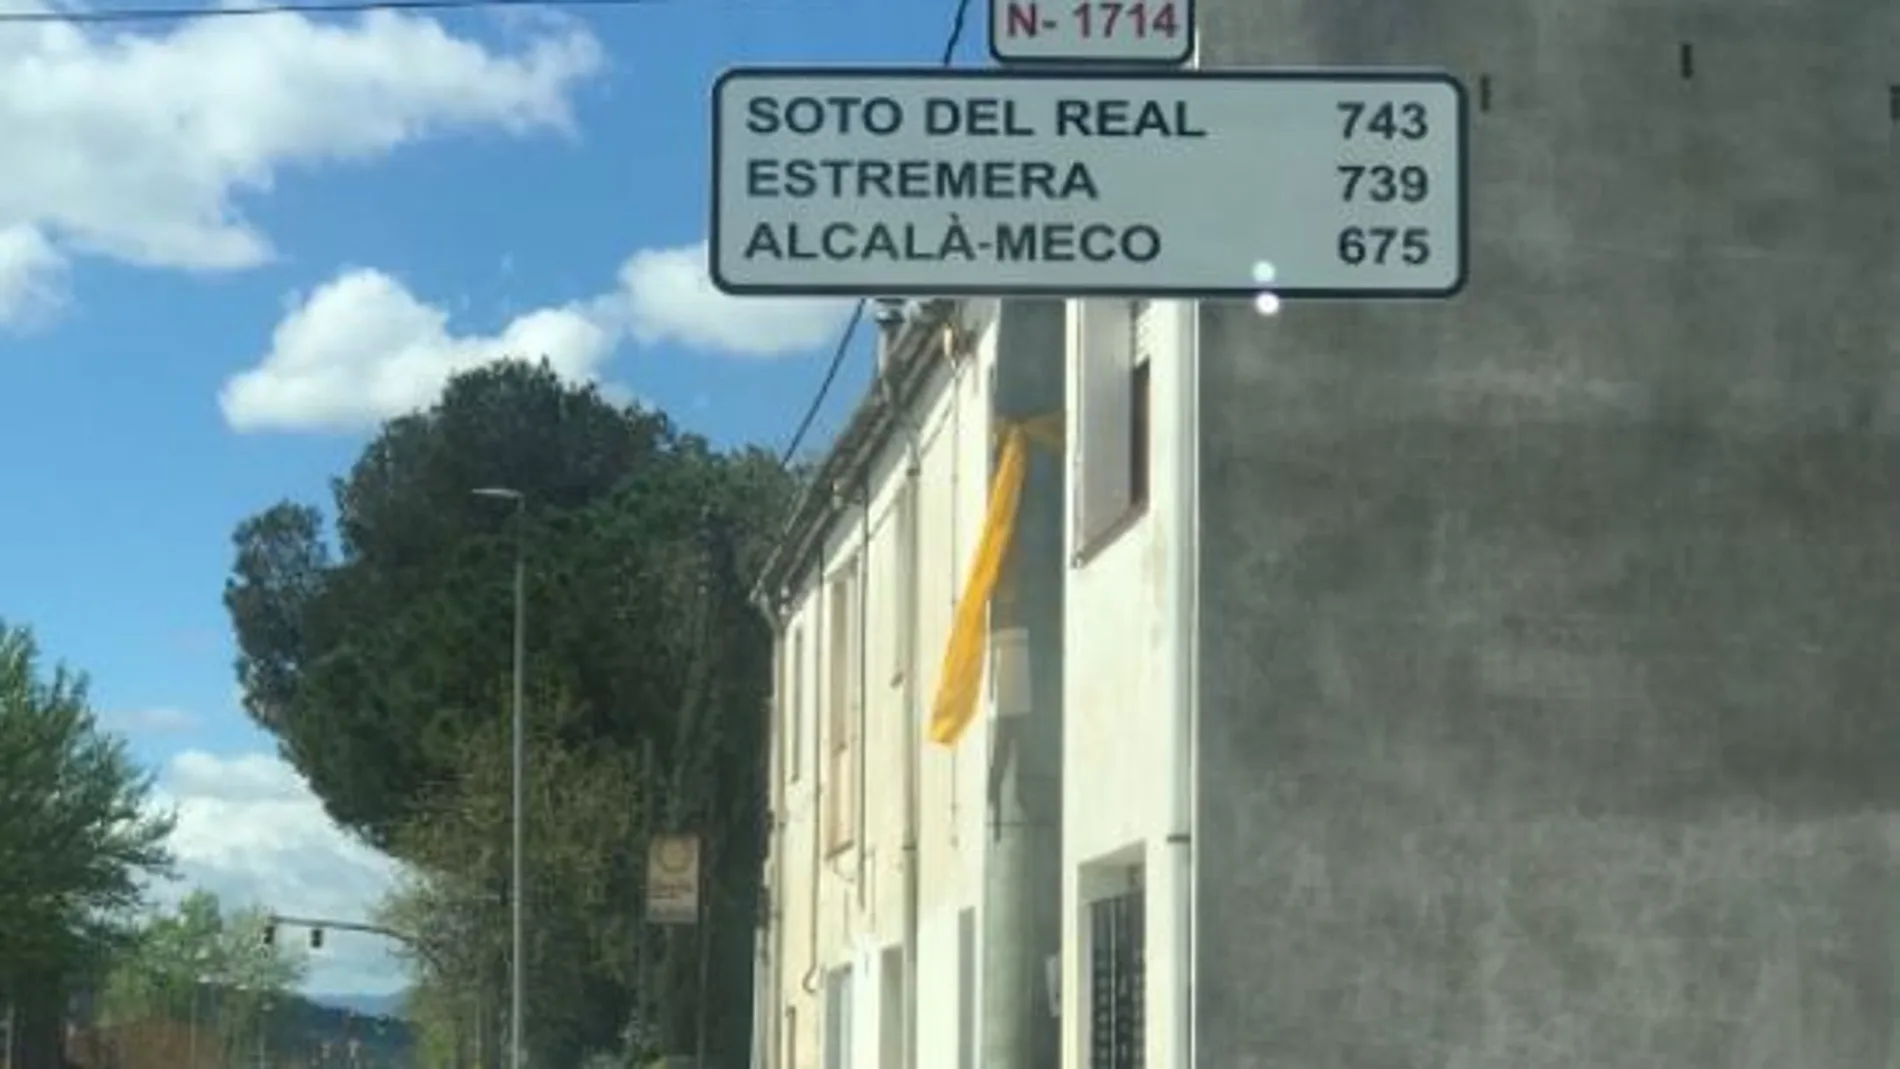 La señal indica los kilómetros a Estremera, Soto del Real y Alcalá Meco